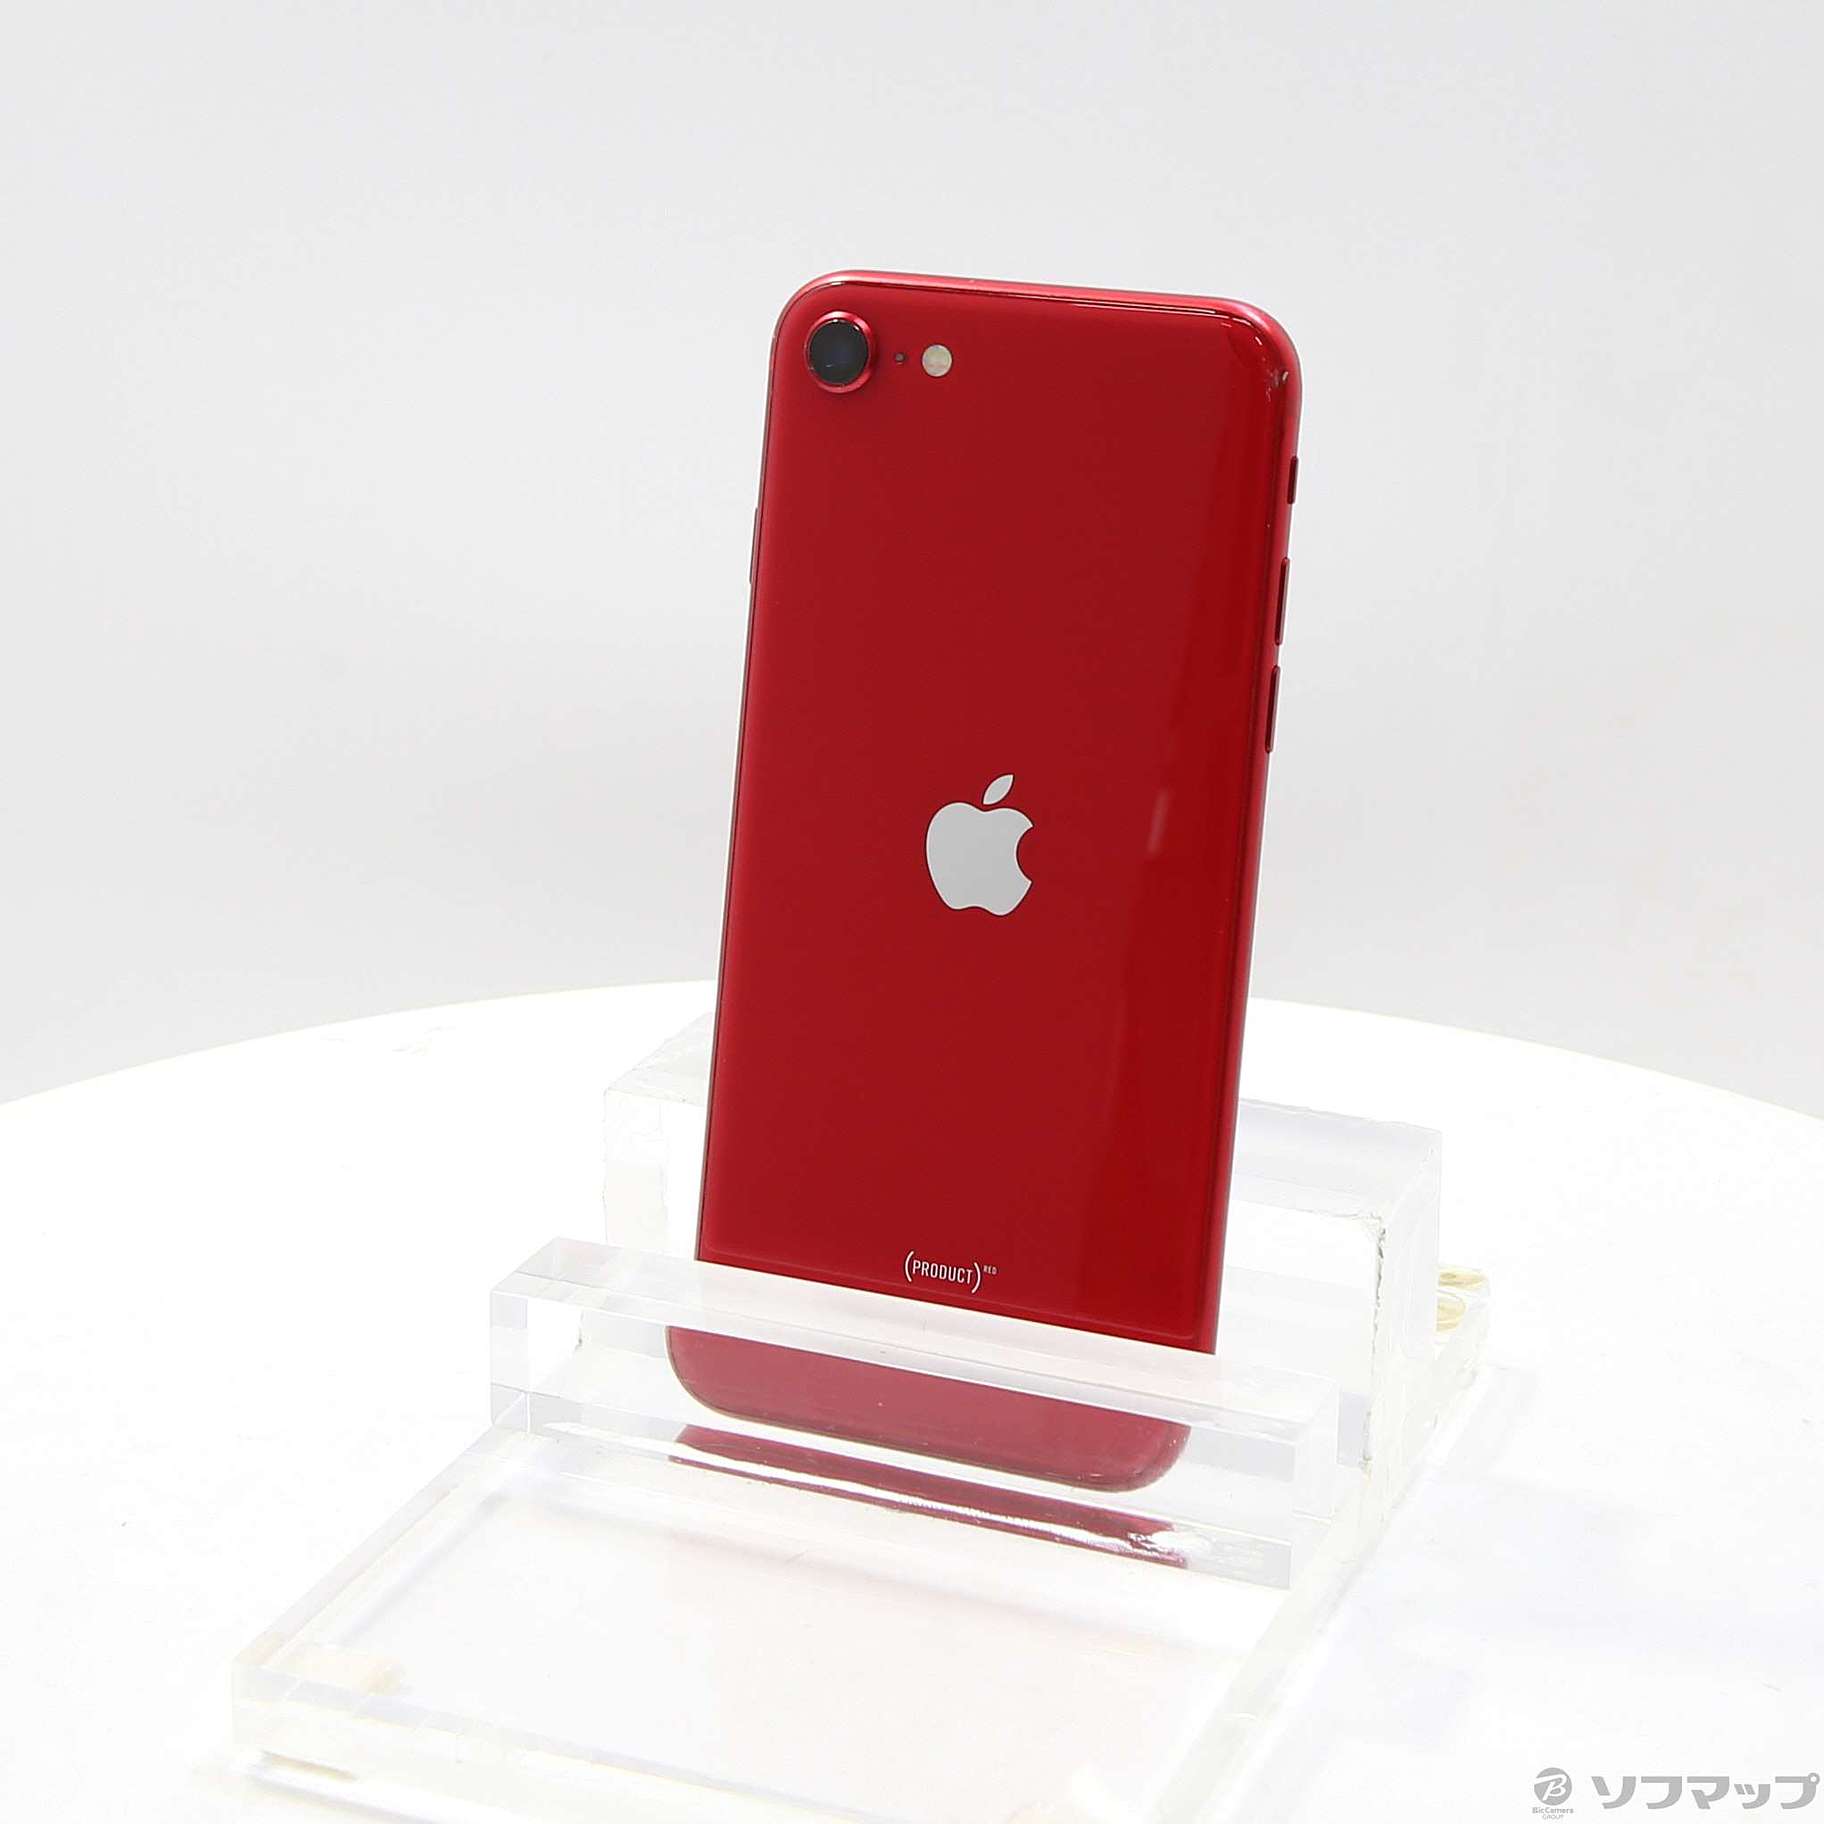 【日本買付】SoftBank MX9U2J/A iPhone SE(第2世代) 64GB レッド SB iPhone